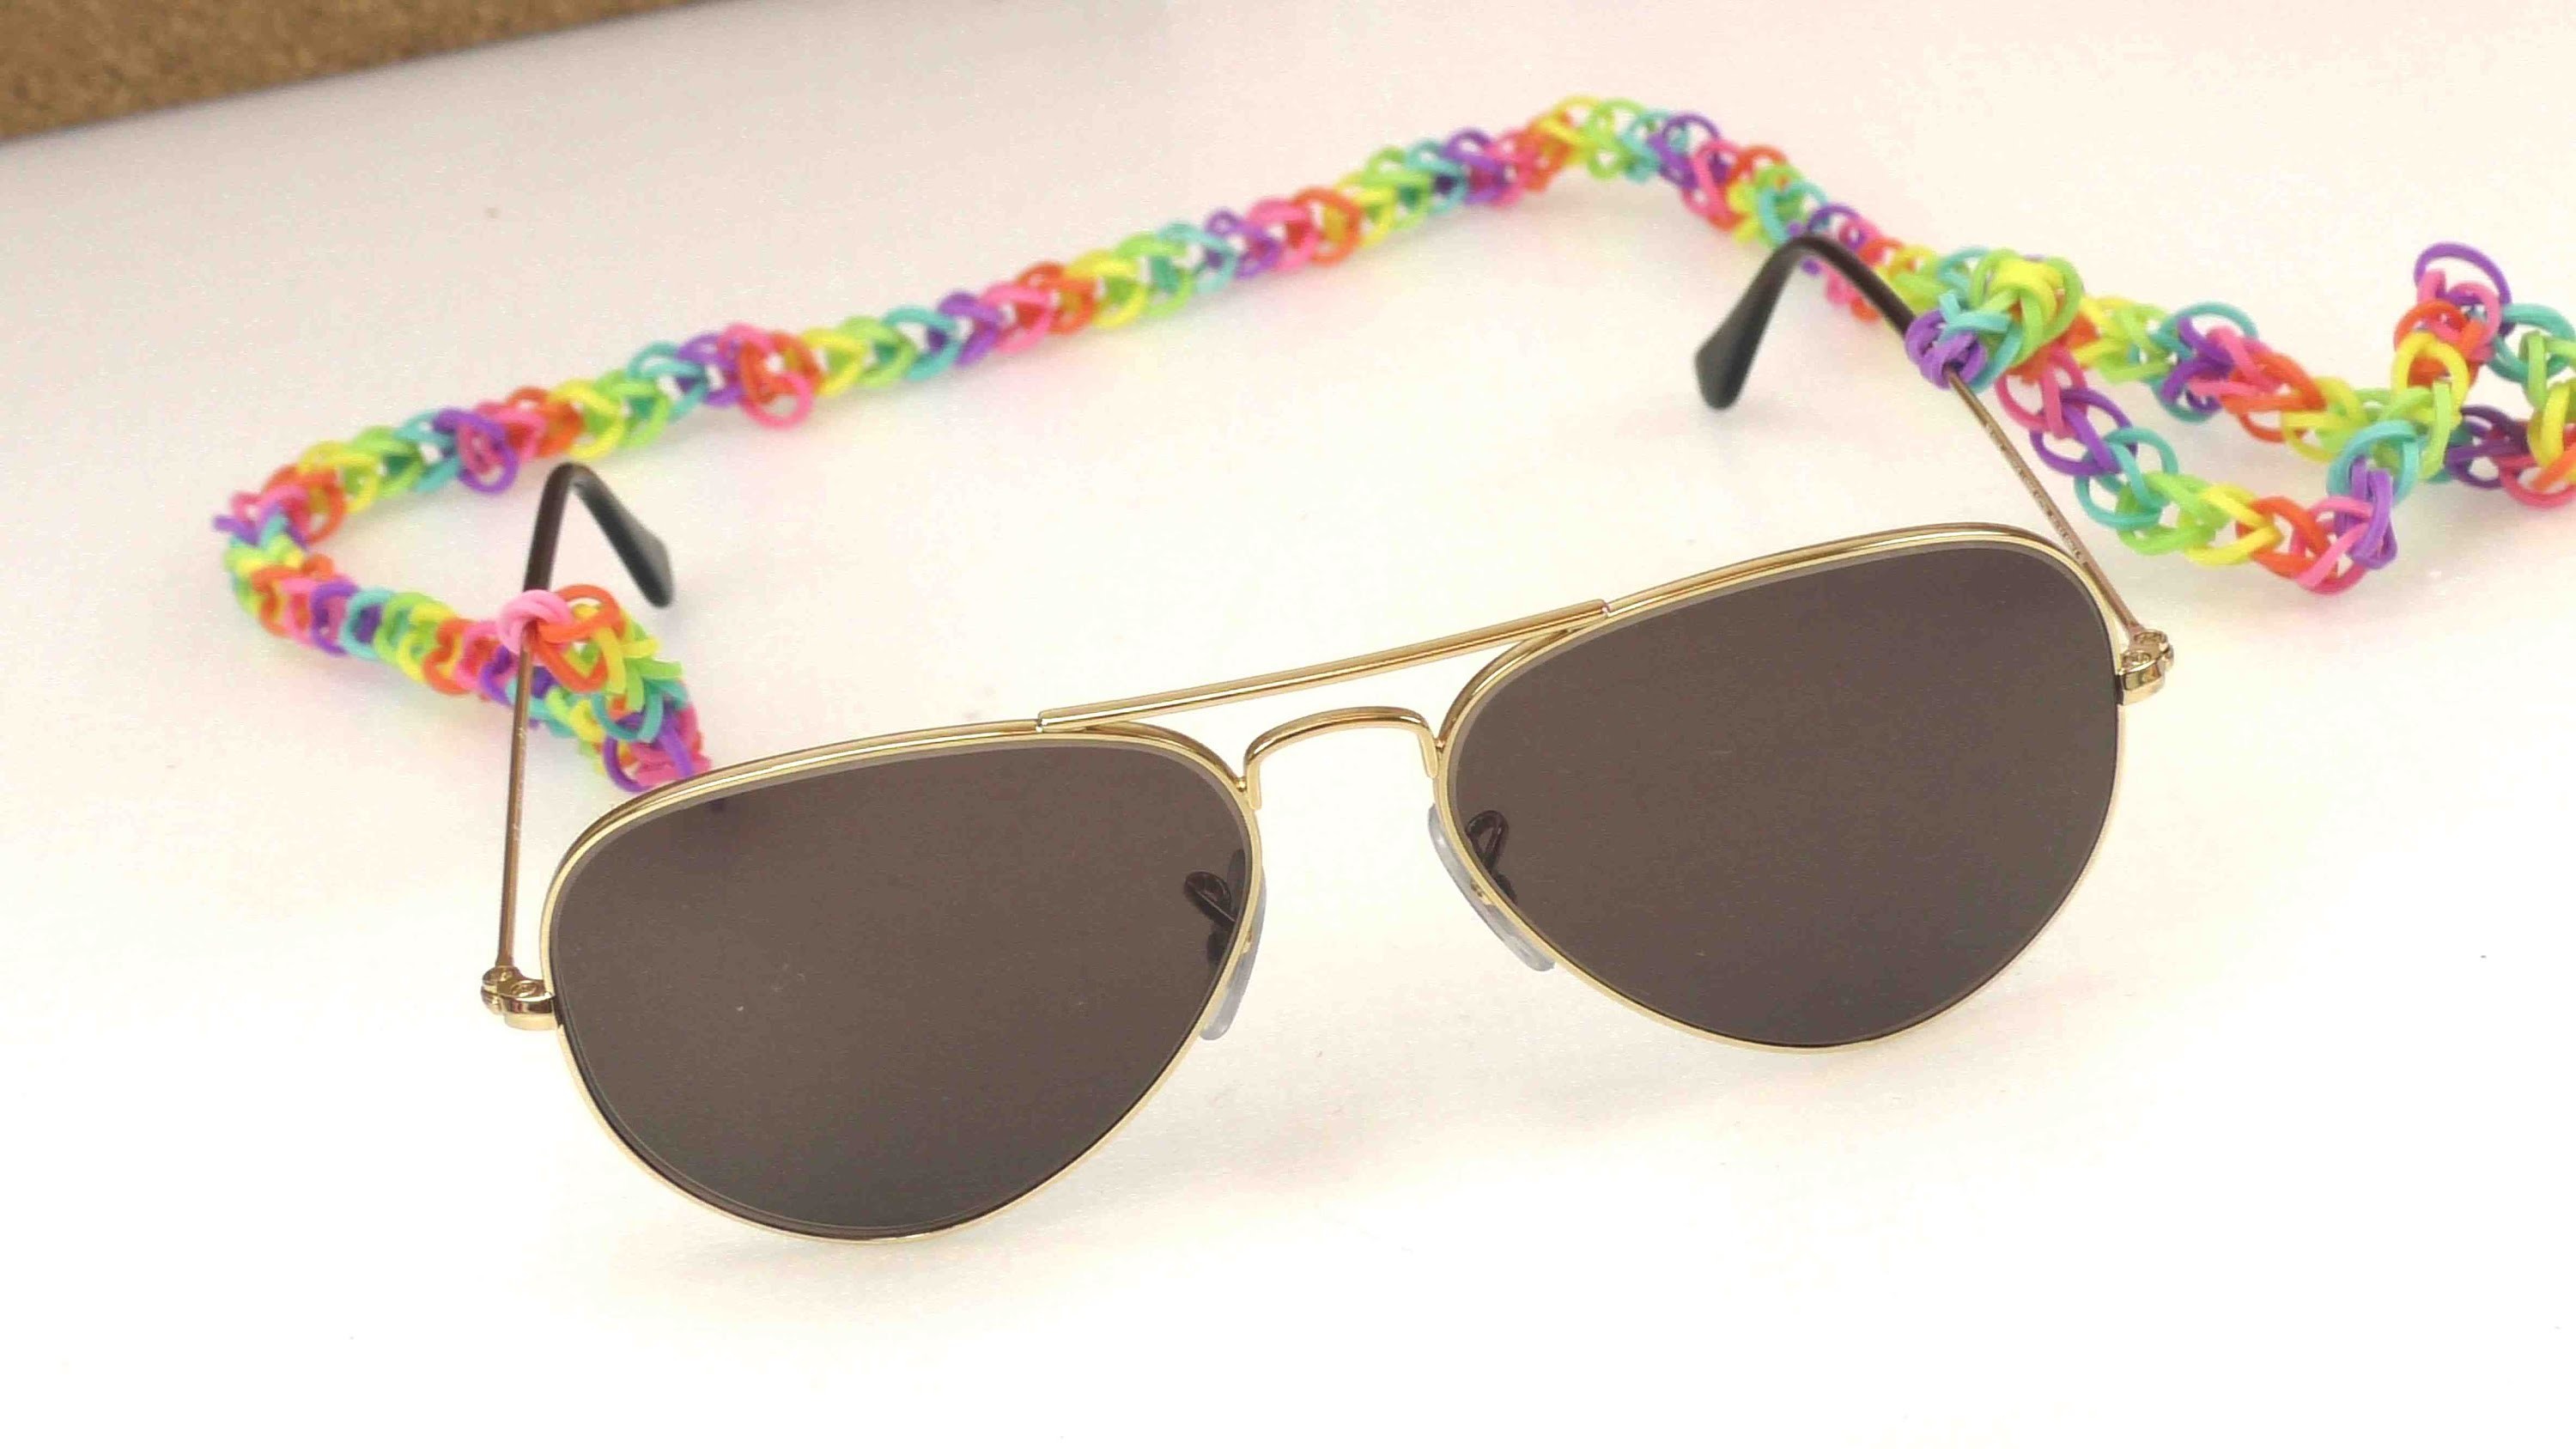 Rainbow loom sonnenbrille - Loom Sonnenbrillenkette für den Sommer